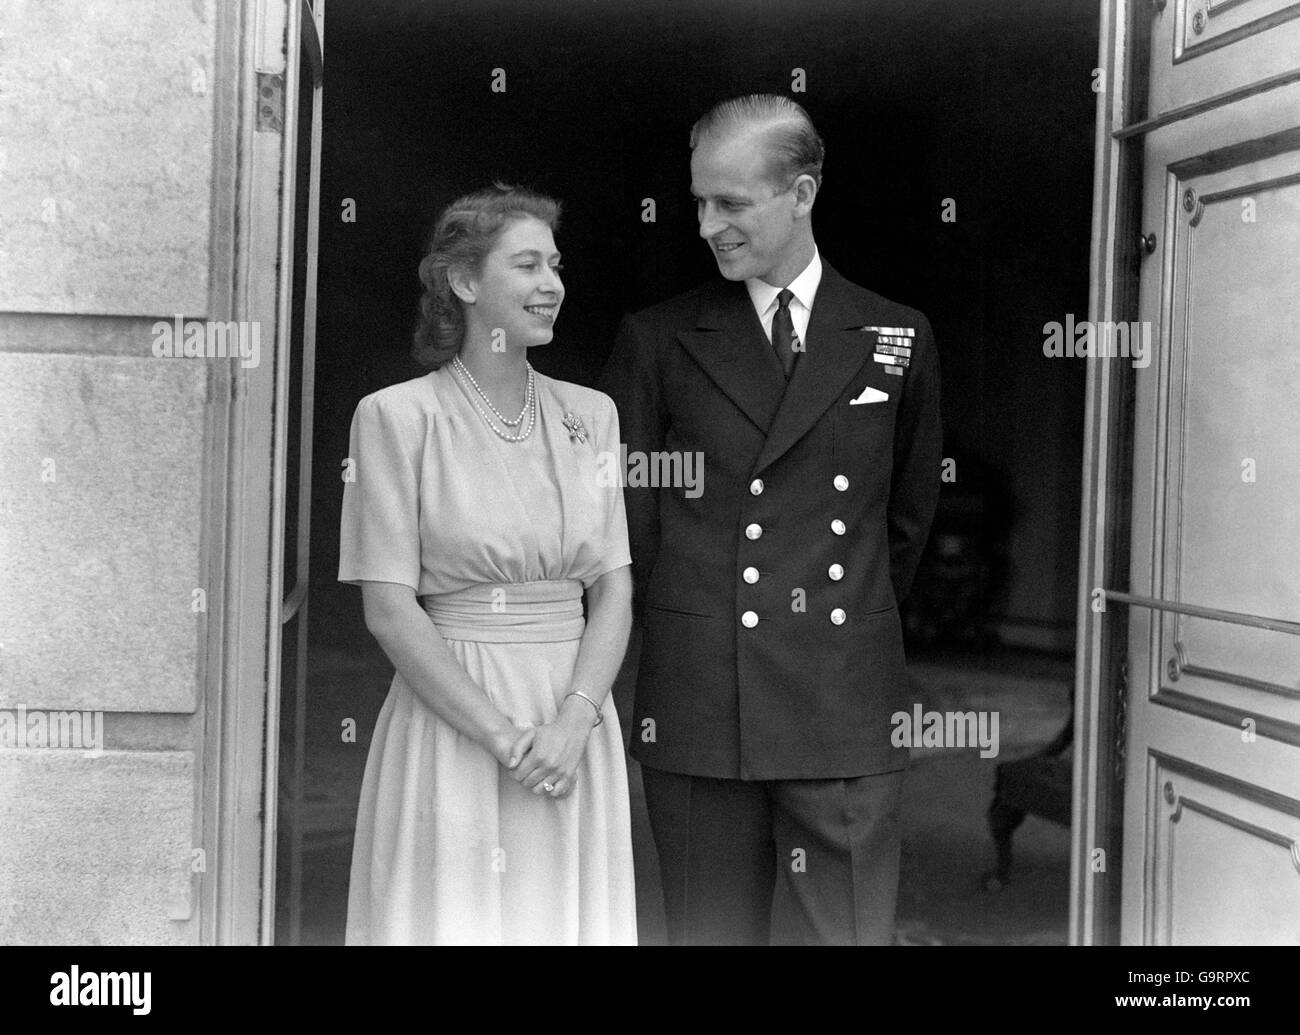 Souriant avec joie, la princesse et sa fiancée Lieut. Philip Mountbatten, au palais de Buckingham. L'anneau d'engagement de la princesse Elizabeth est clairement visible Banque D'Images